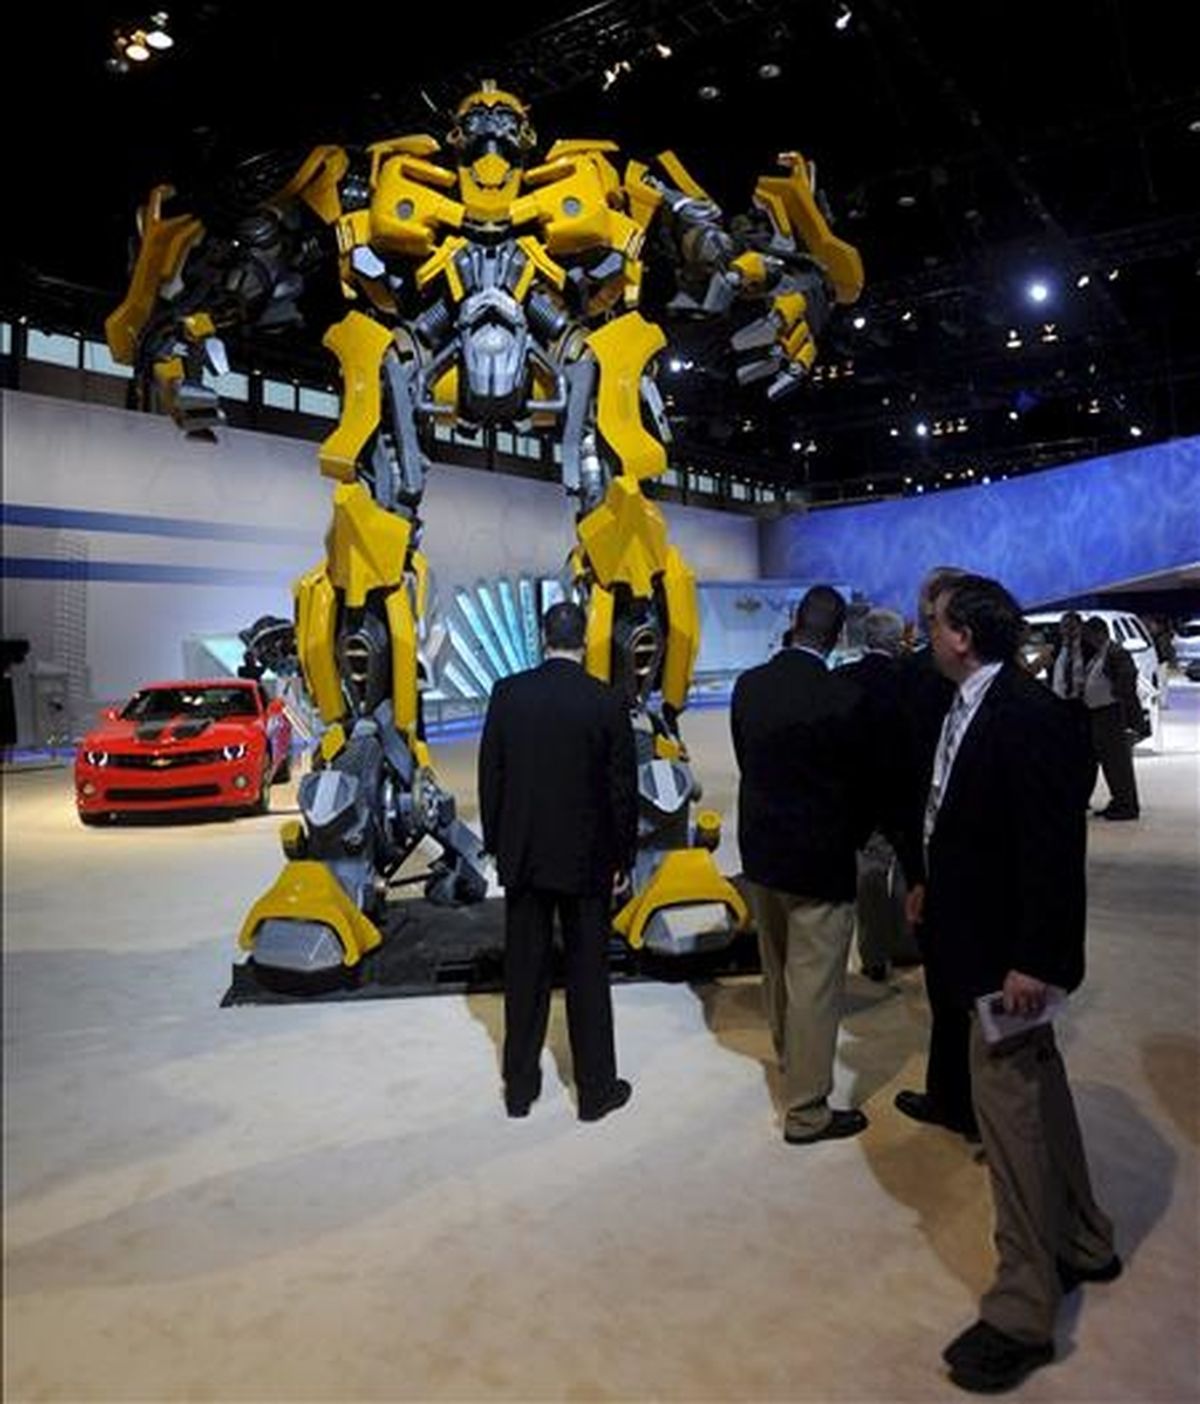 Varias personas observan al personaje "Bumble Bee" de Transformers en el Salón del Automovil de Chicago. EFE